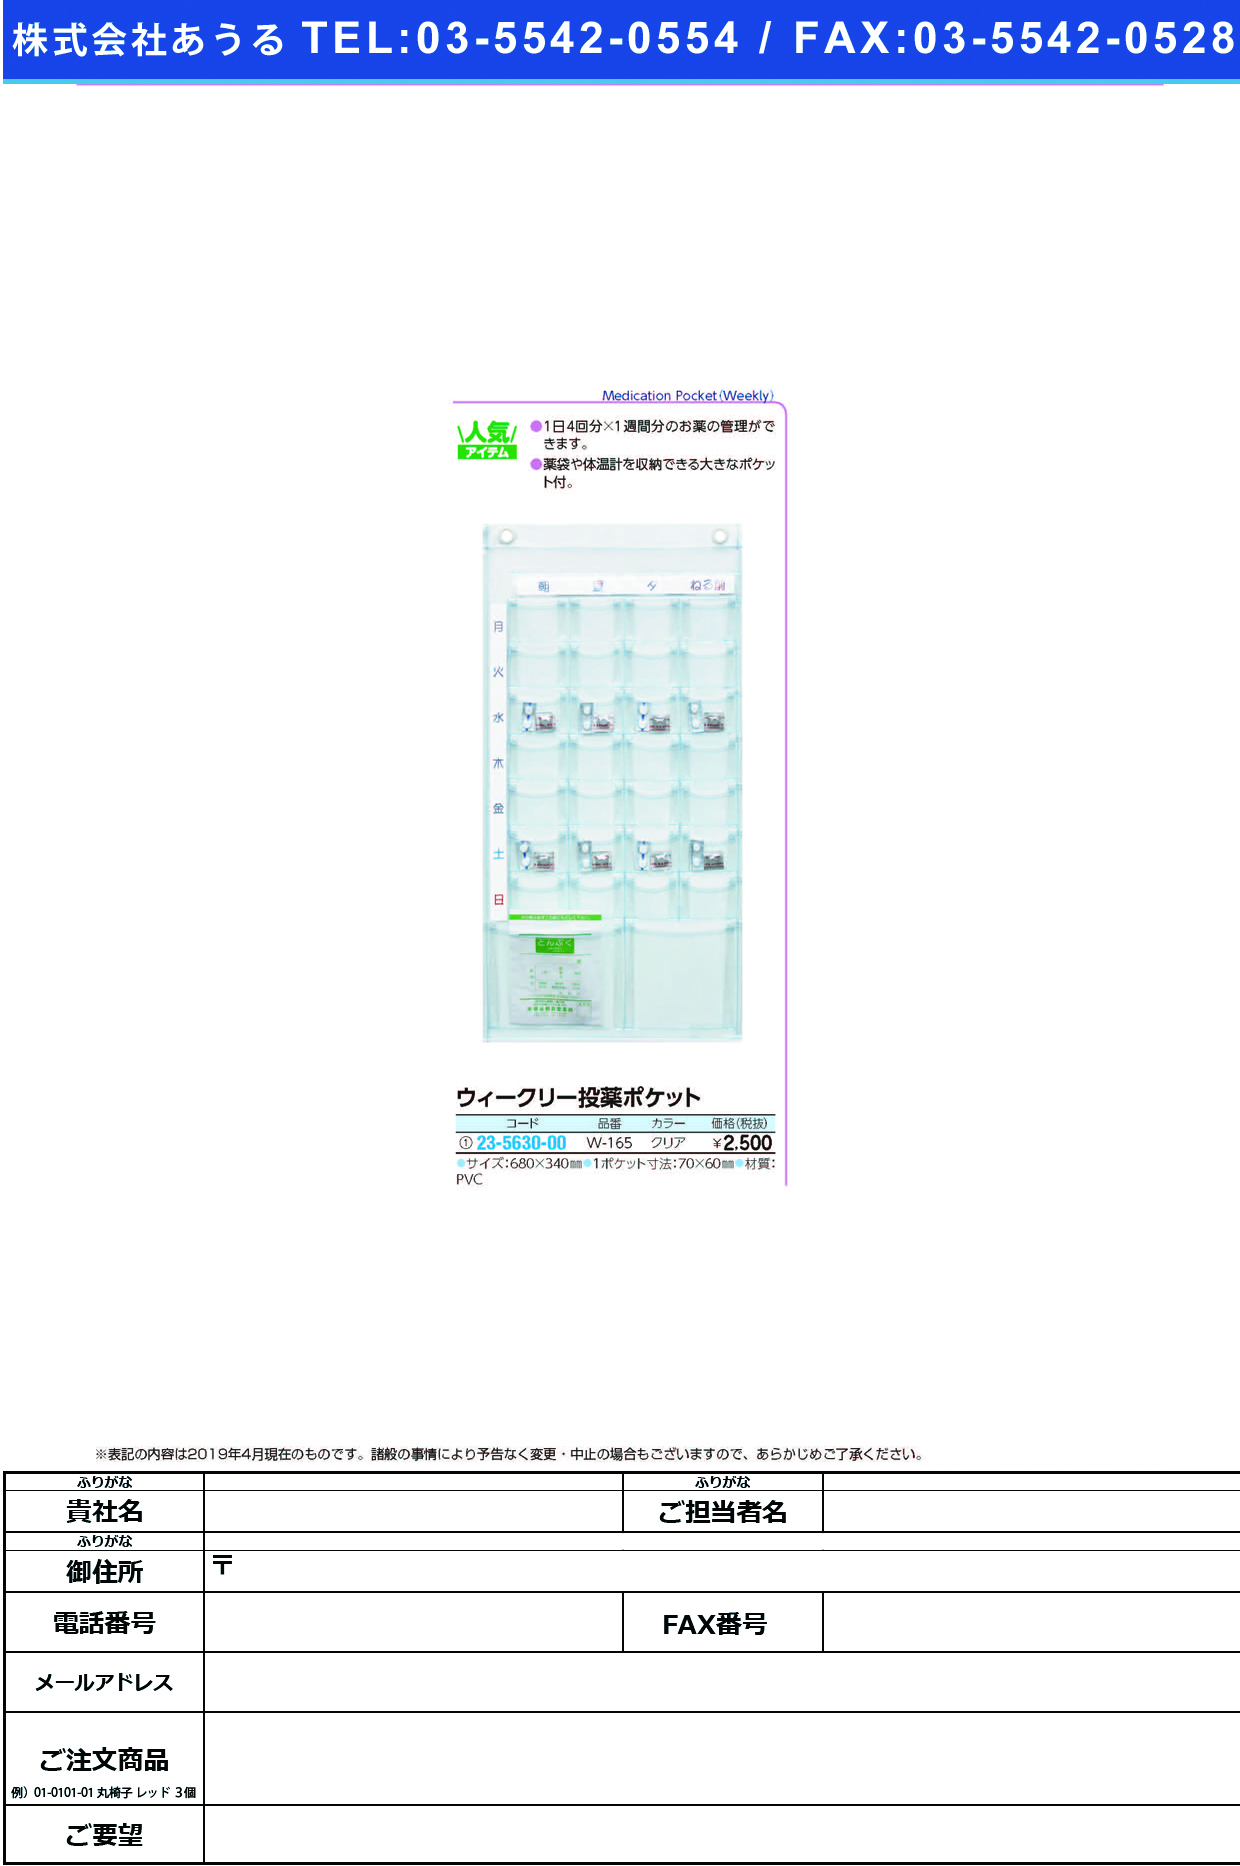 (23-5630-00)ウィークリー投薬ポケット W-165(ｸﾘｱ) ｳｨｰｸﾘｰﾄｳﾔｸﾎﾟｹｯﾄ【1個単位】【2019年カタログ商品】